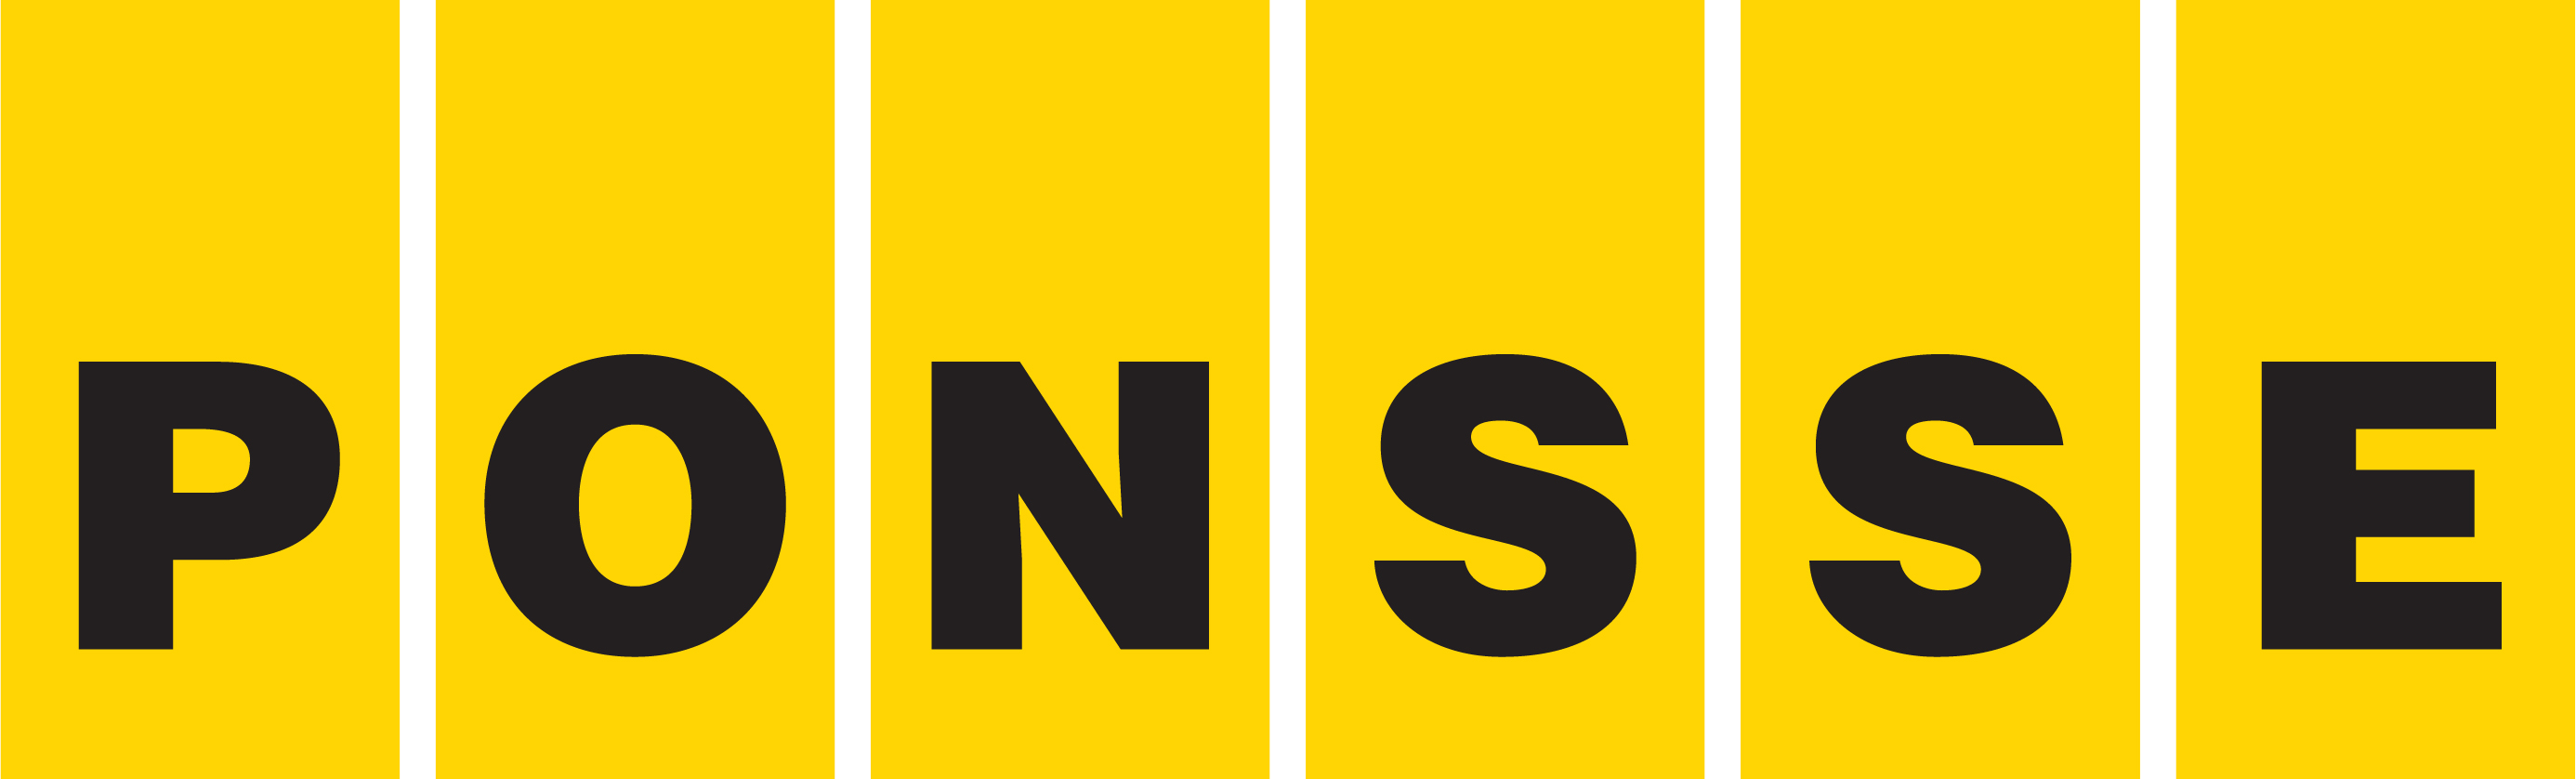 Ponsse logo (PNG transparent)